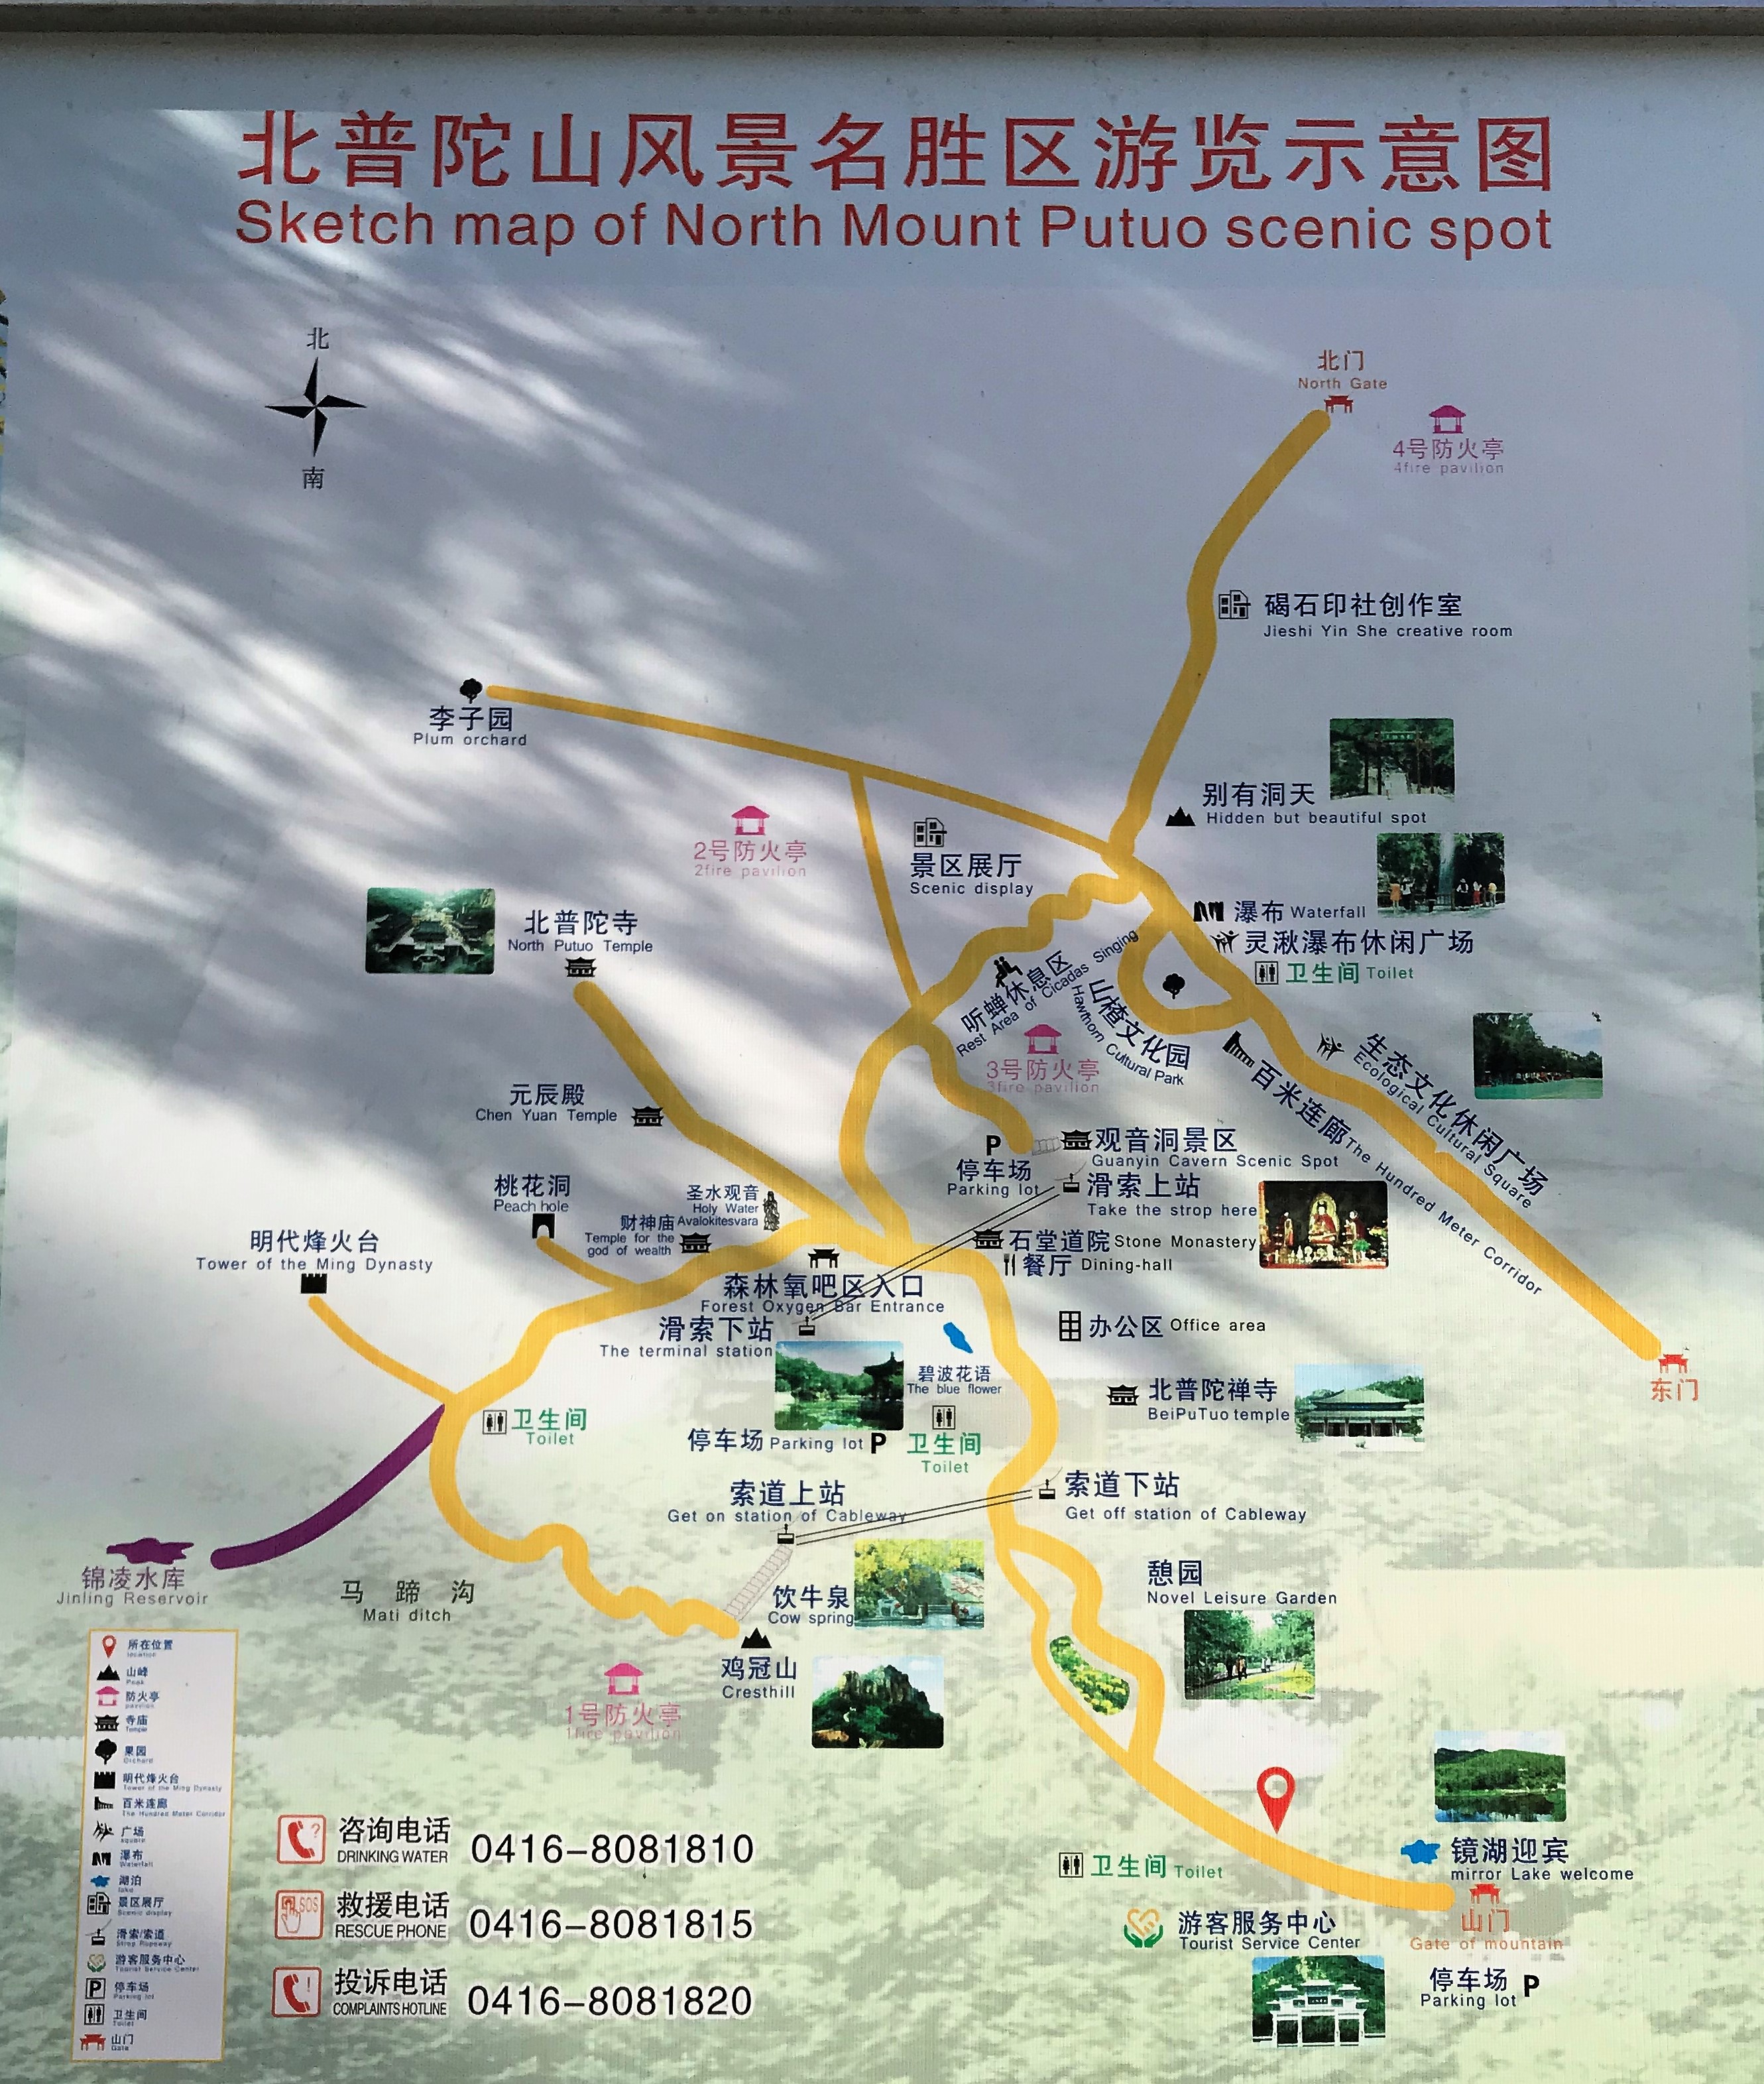 辽西胜境——北普陀山,也是锦州市民徒步健身的好去处